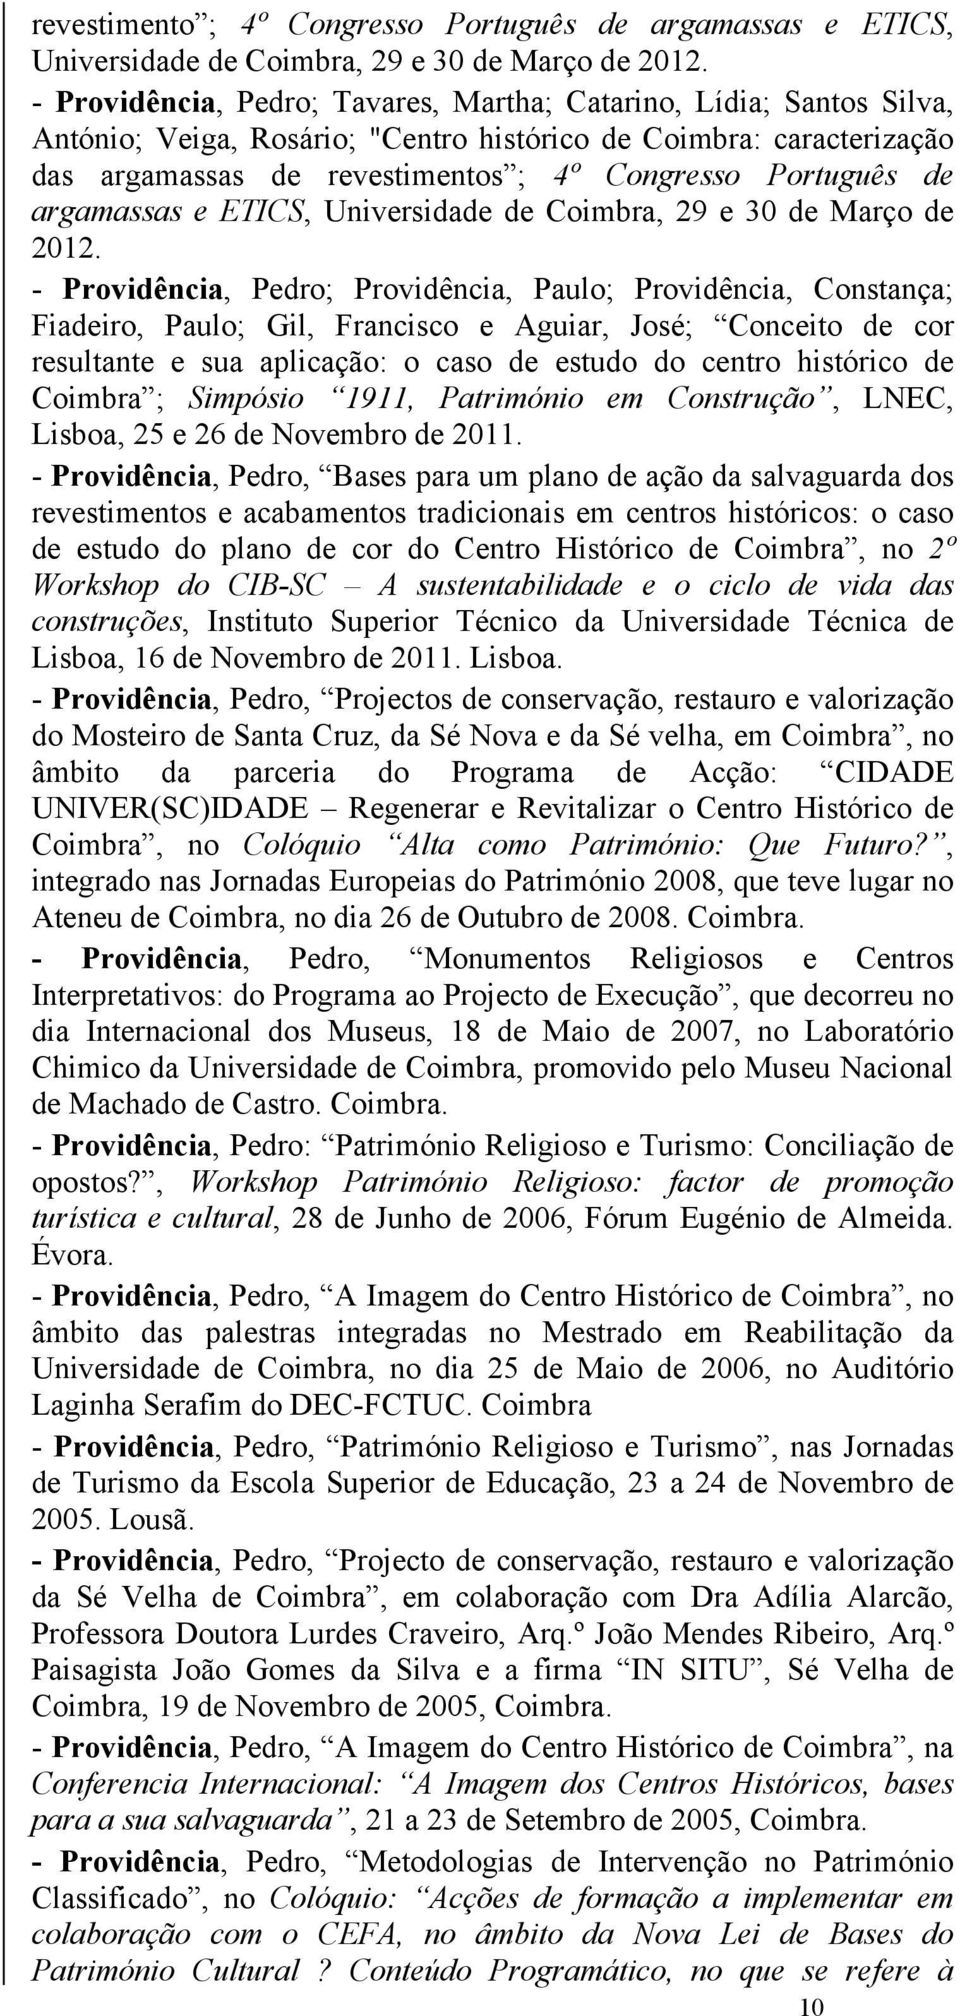 argamassas e ETICS, Universidade de Coimbra, 29 e 30 de Março de 2012.